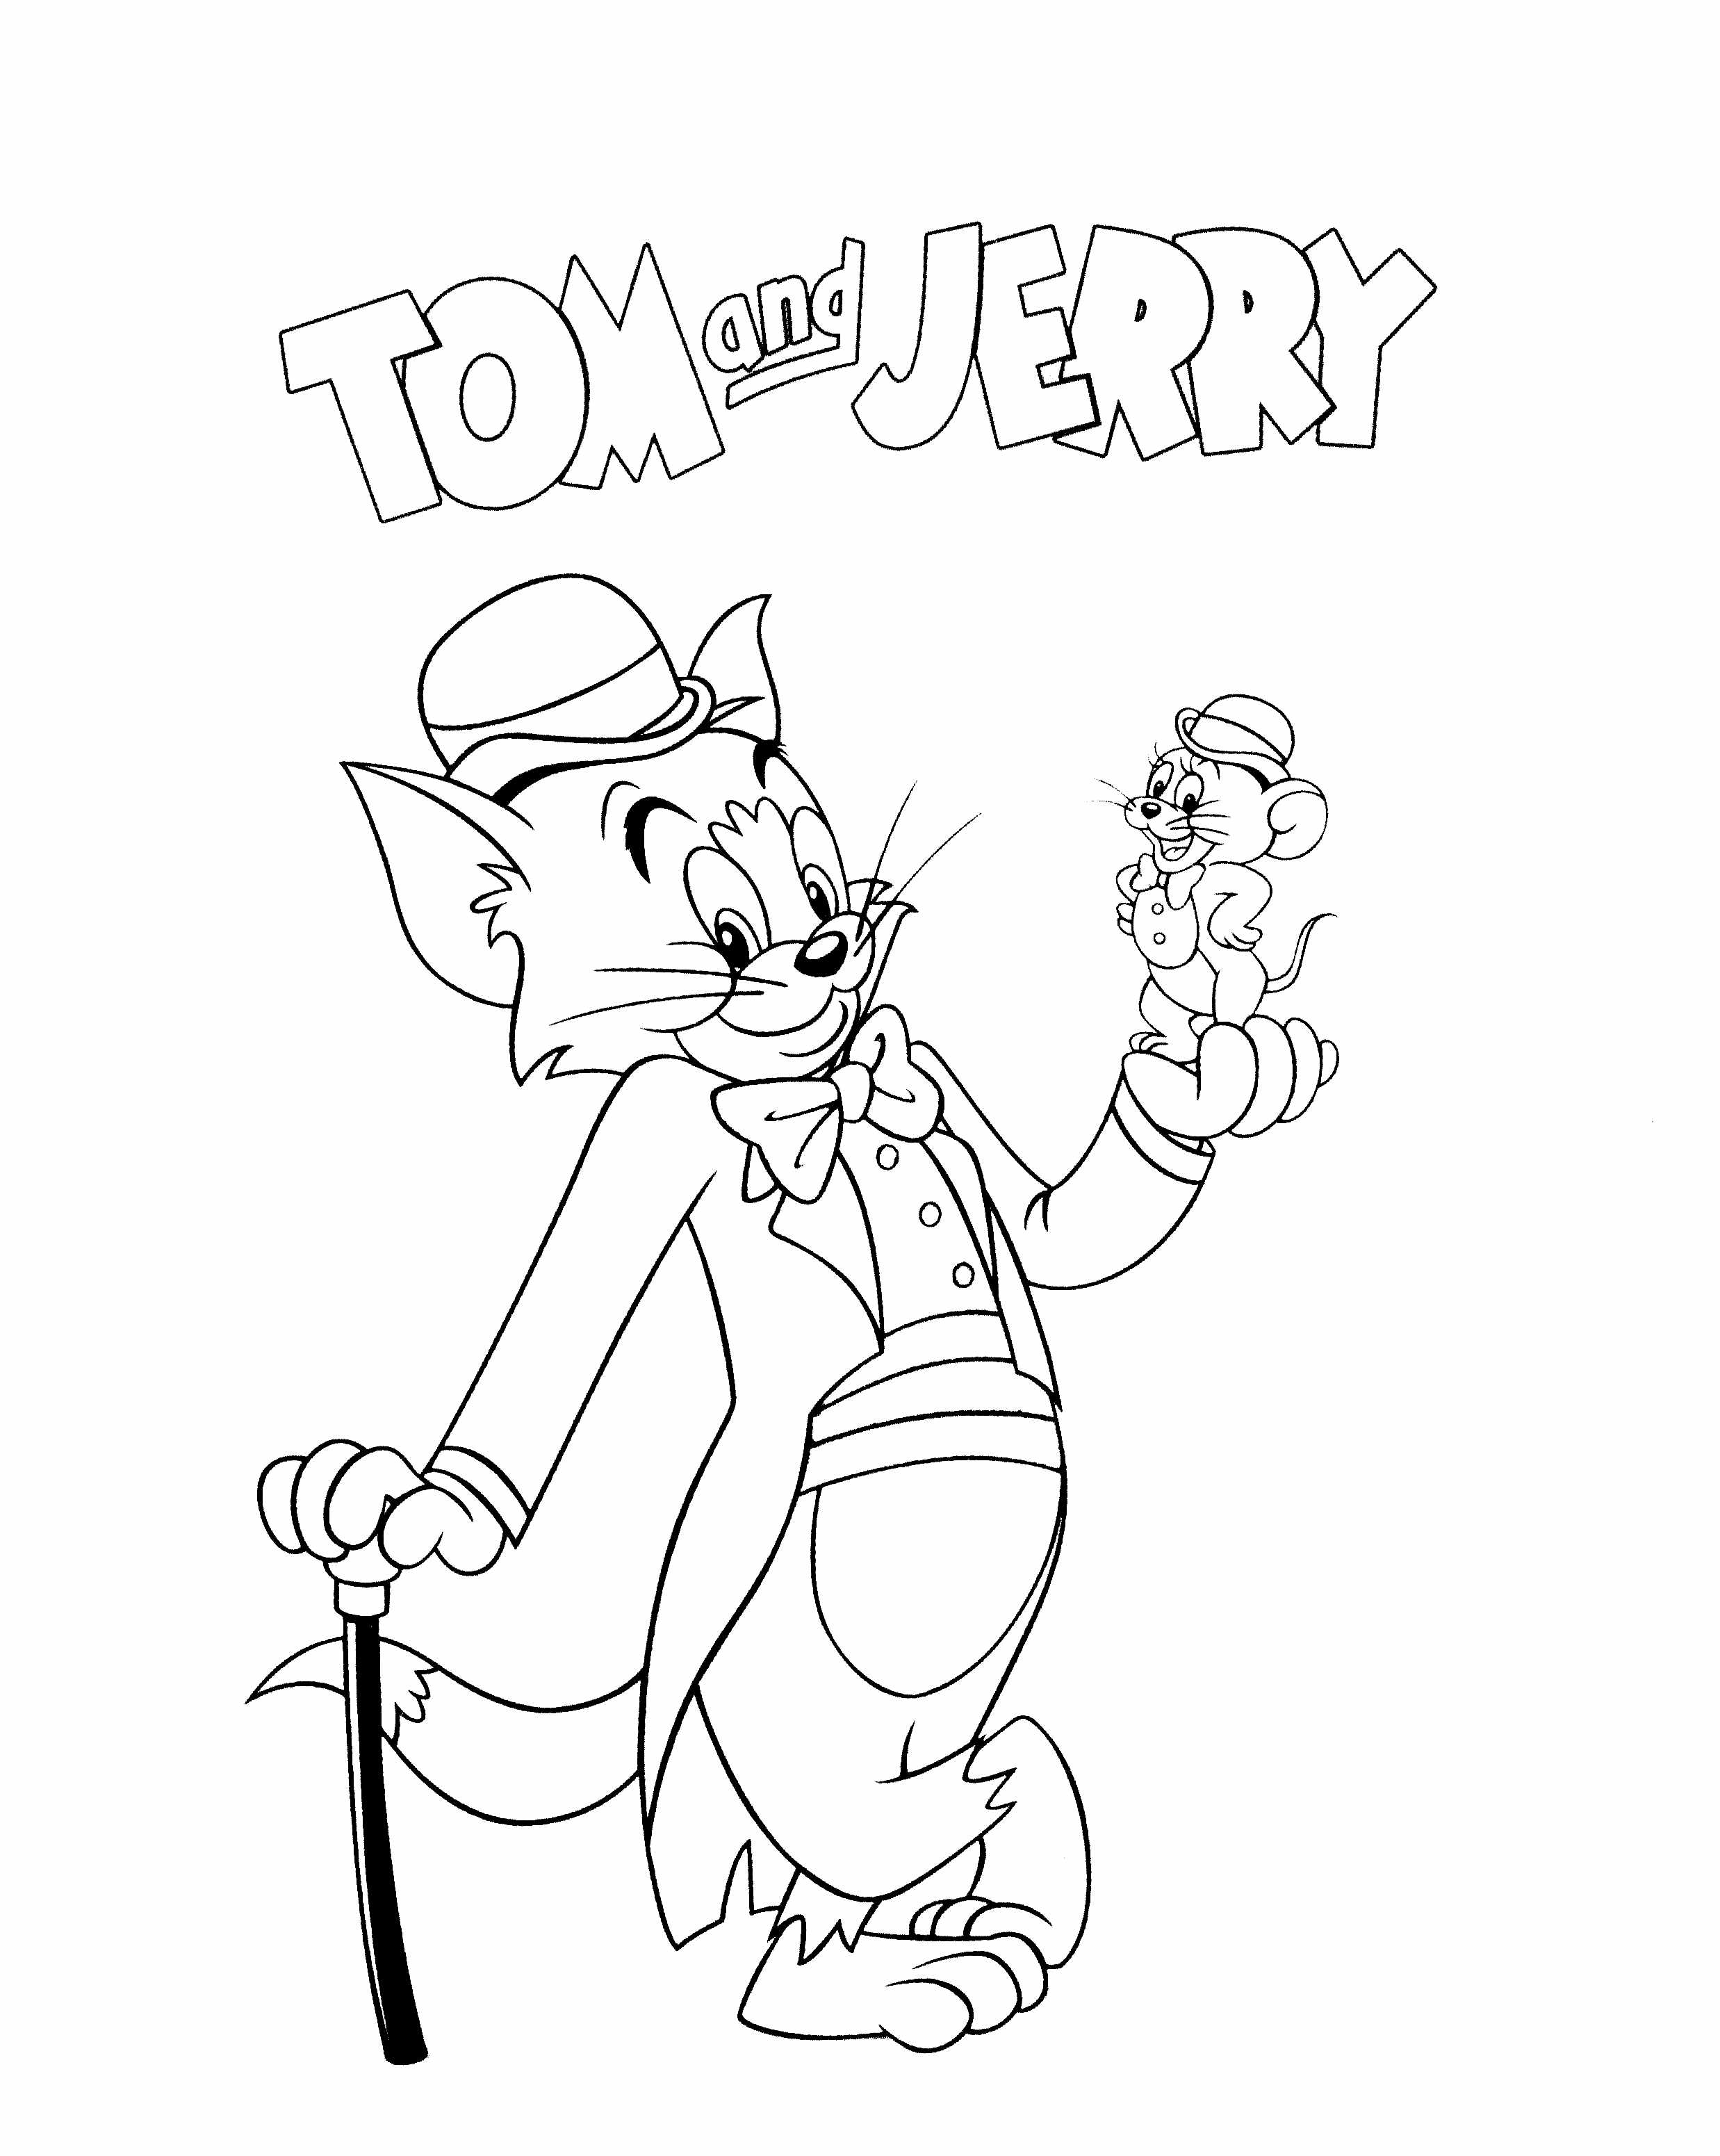 Dibujos para colorear gratis de Tom y Jerry para descargar - Tom y Jerry -  Just Color Niños : Dibujos para colorear para niños